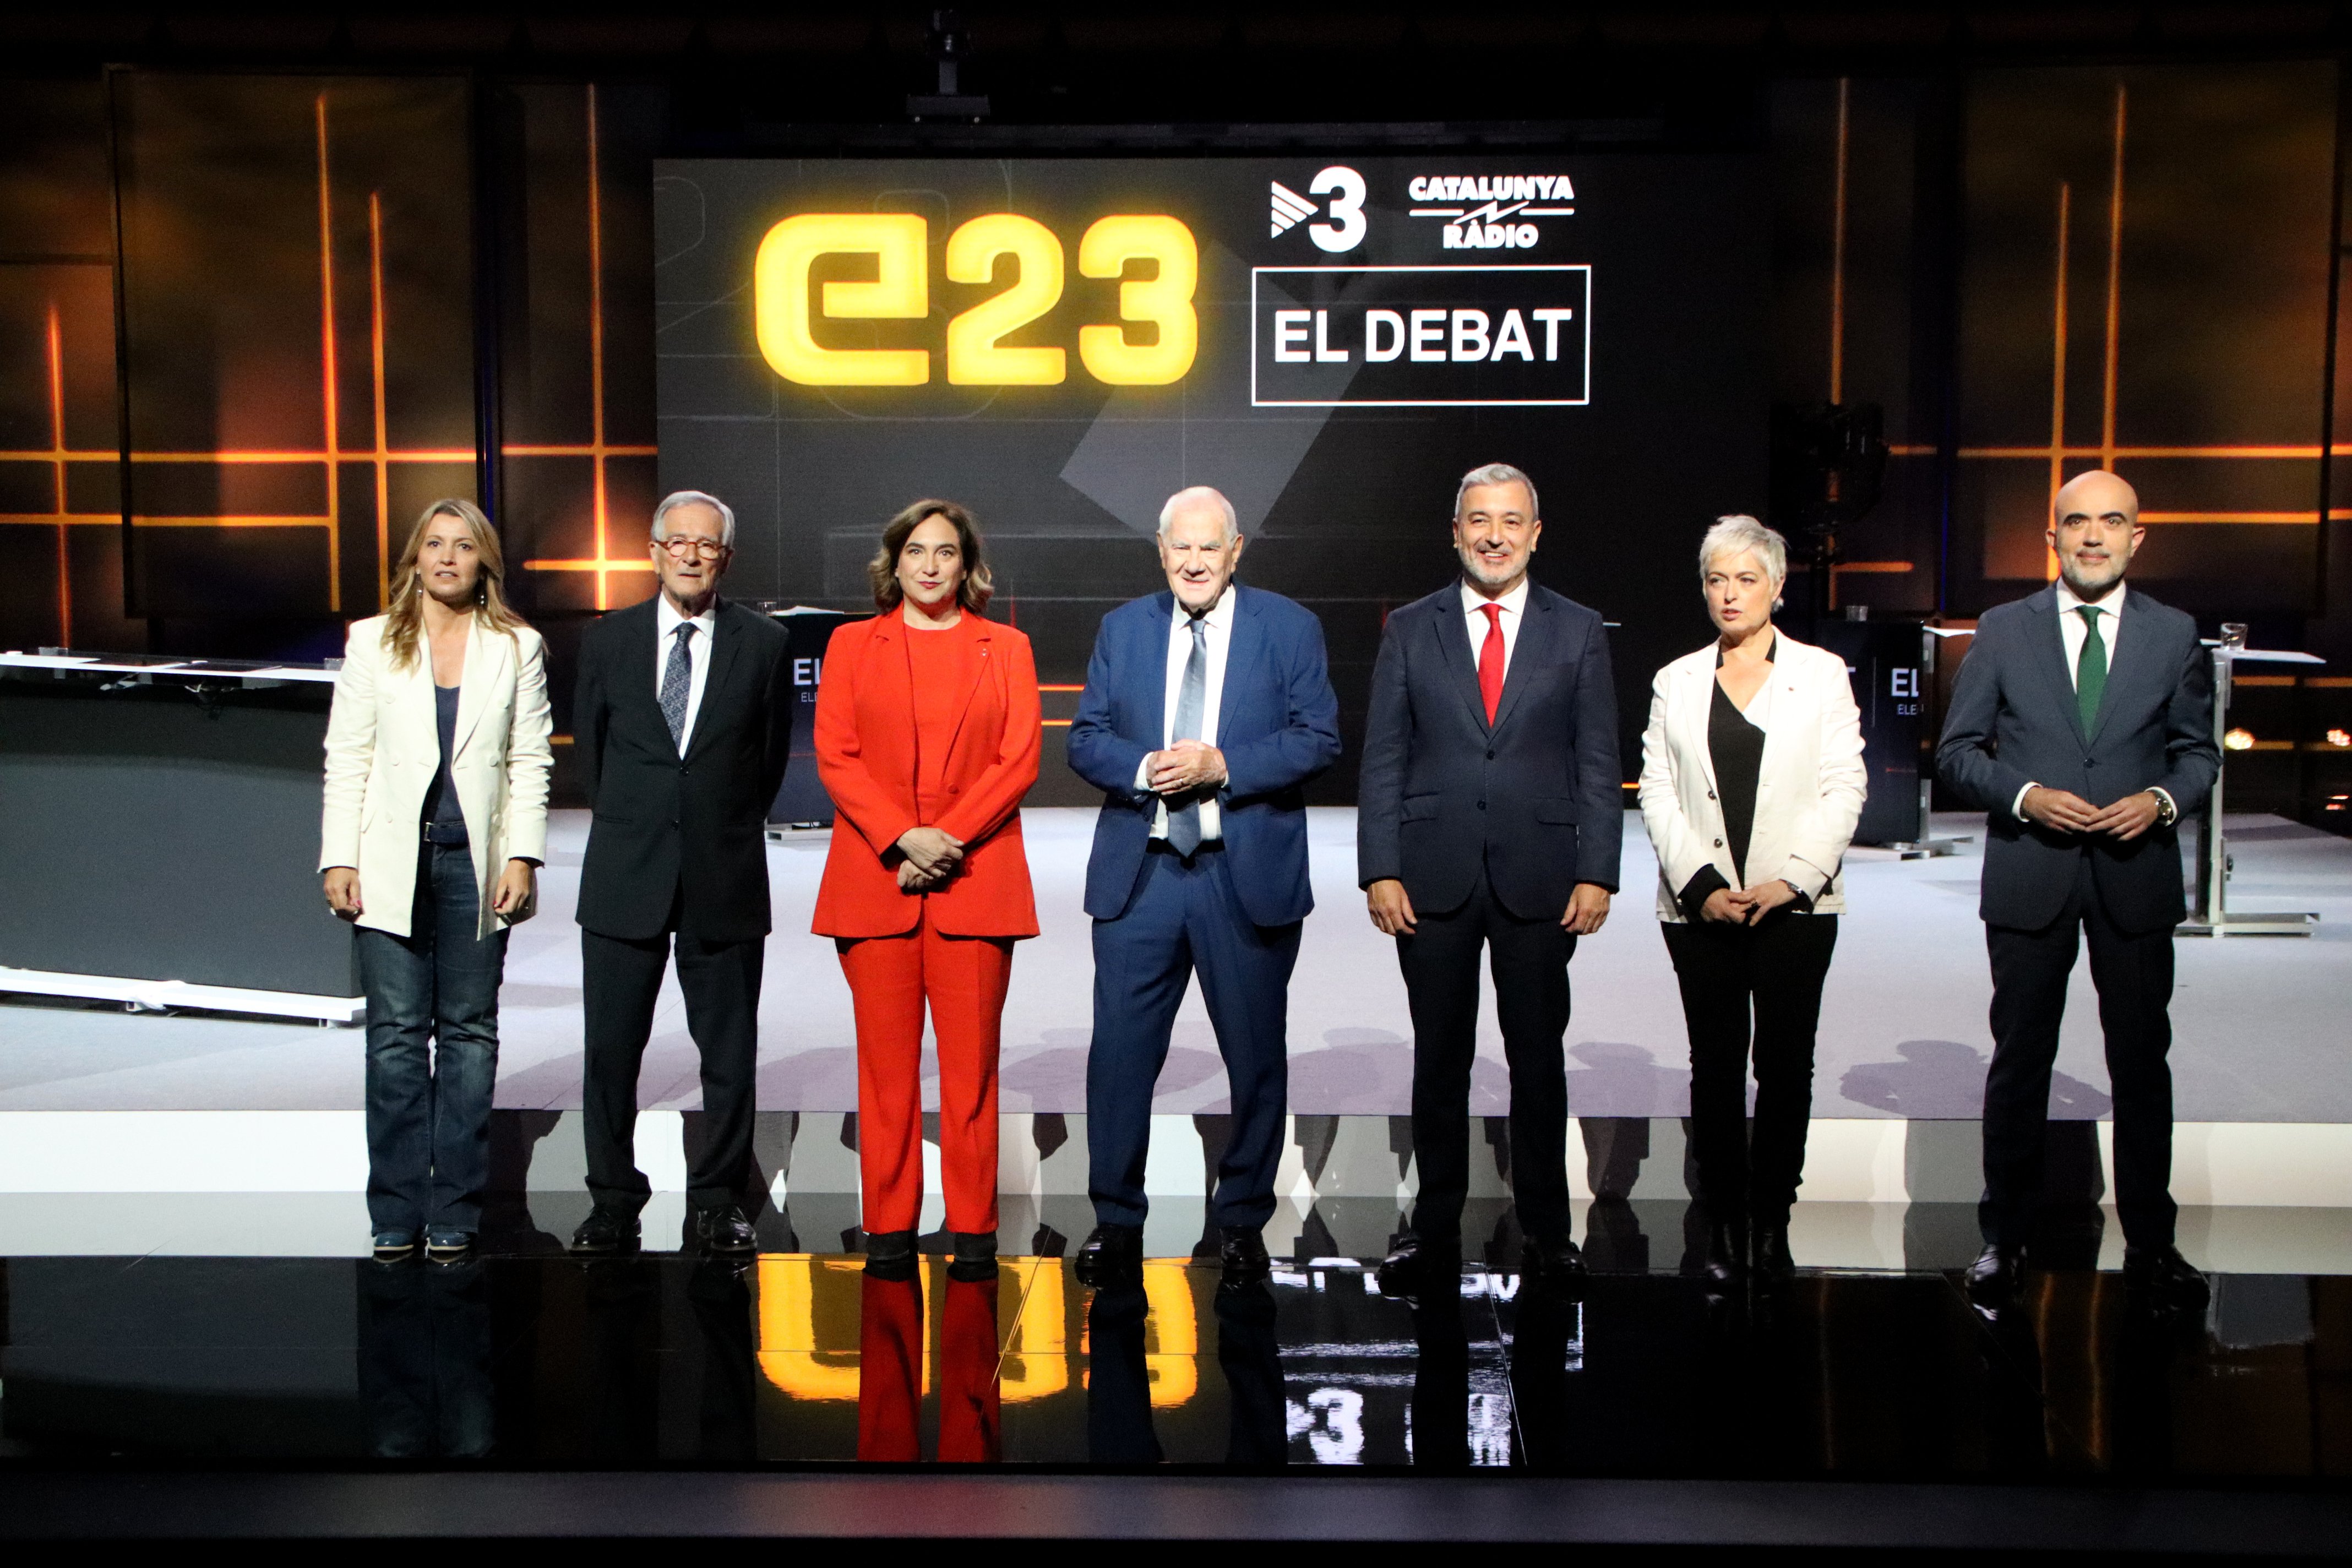 El frec a frec de les enquestes dispara la tensió al debat de TV3